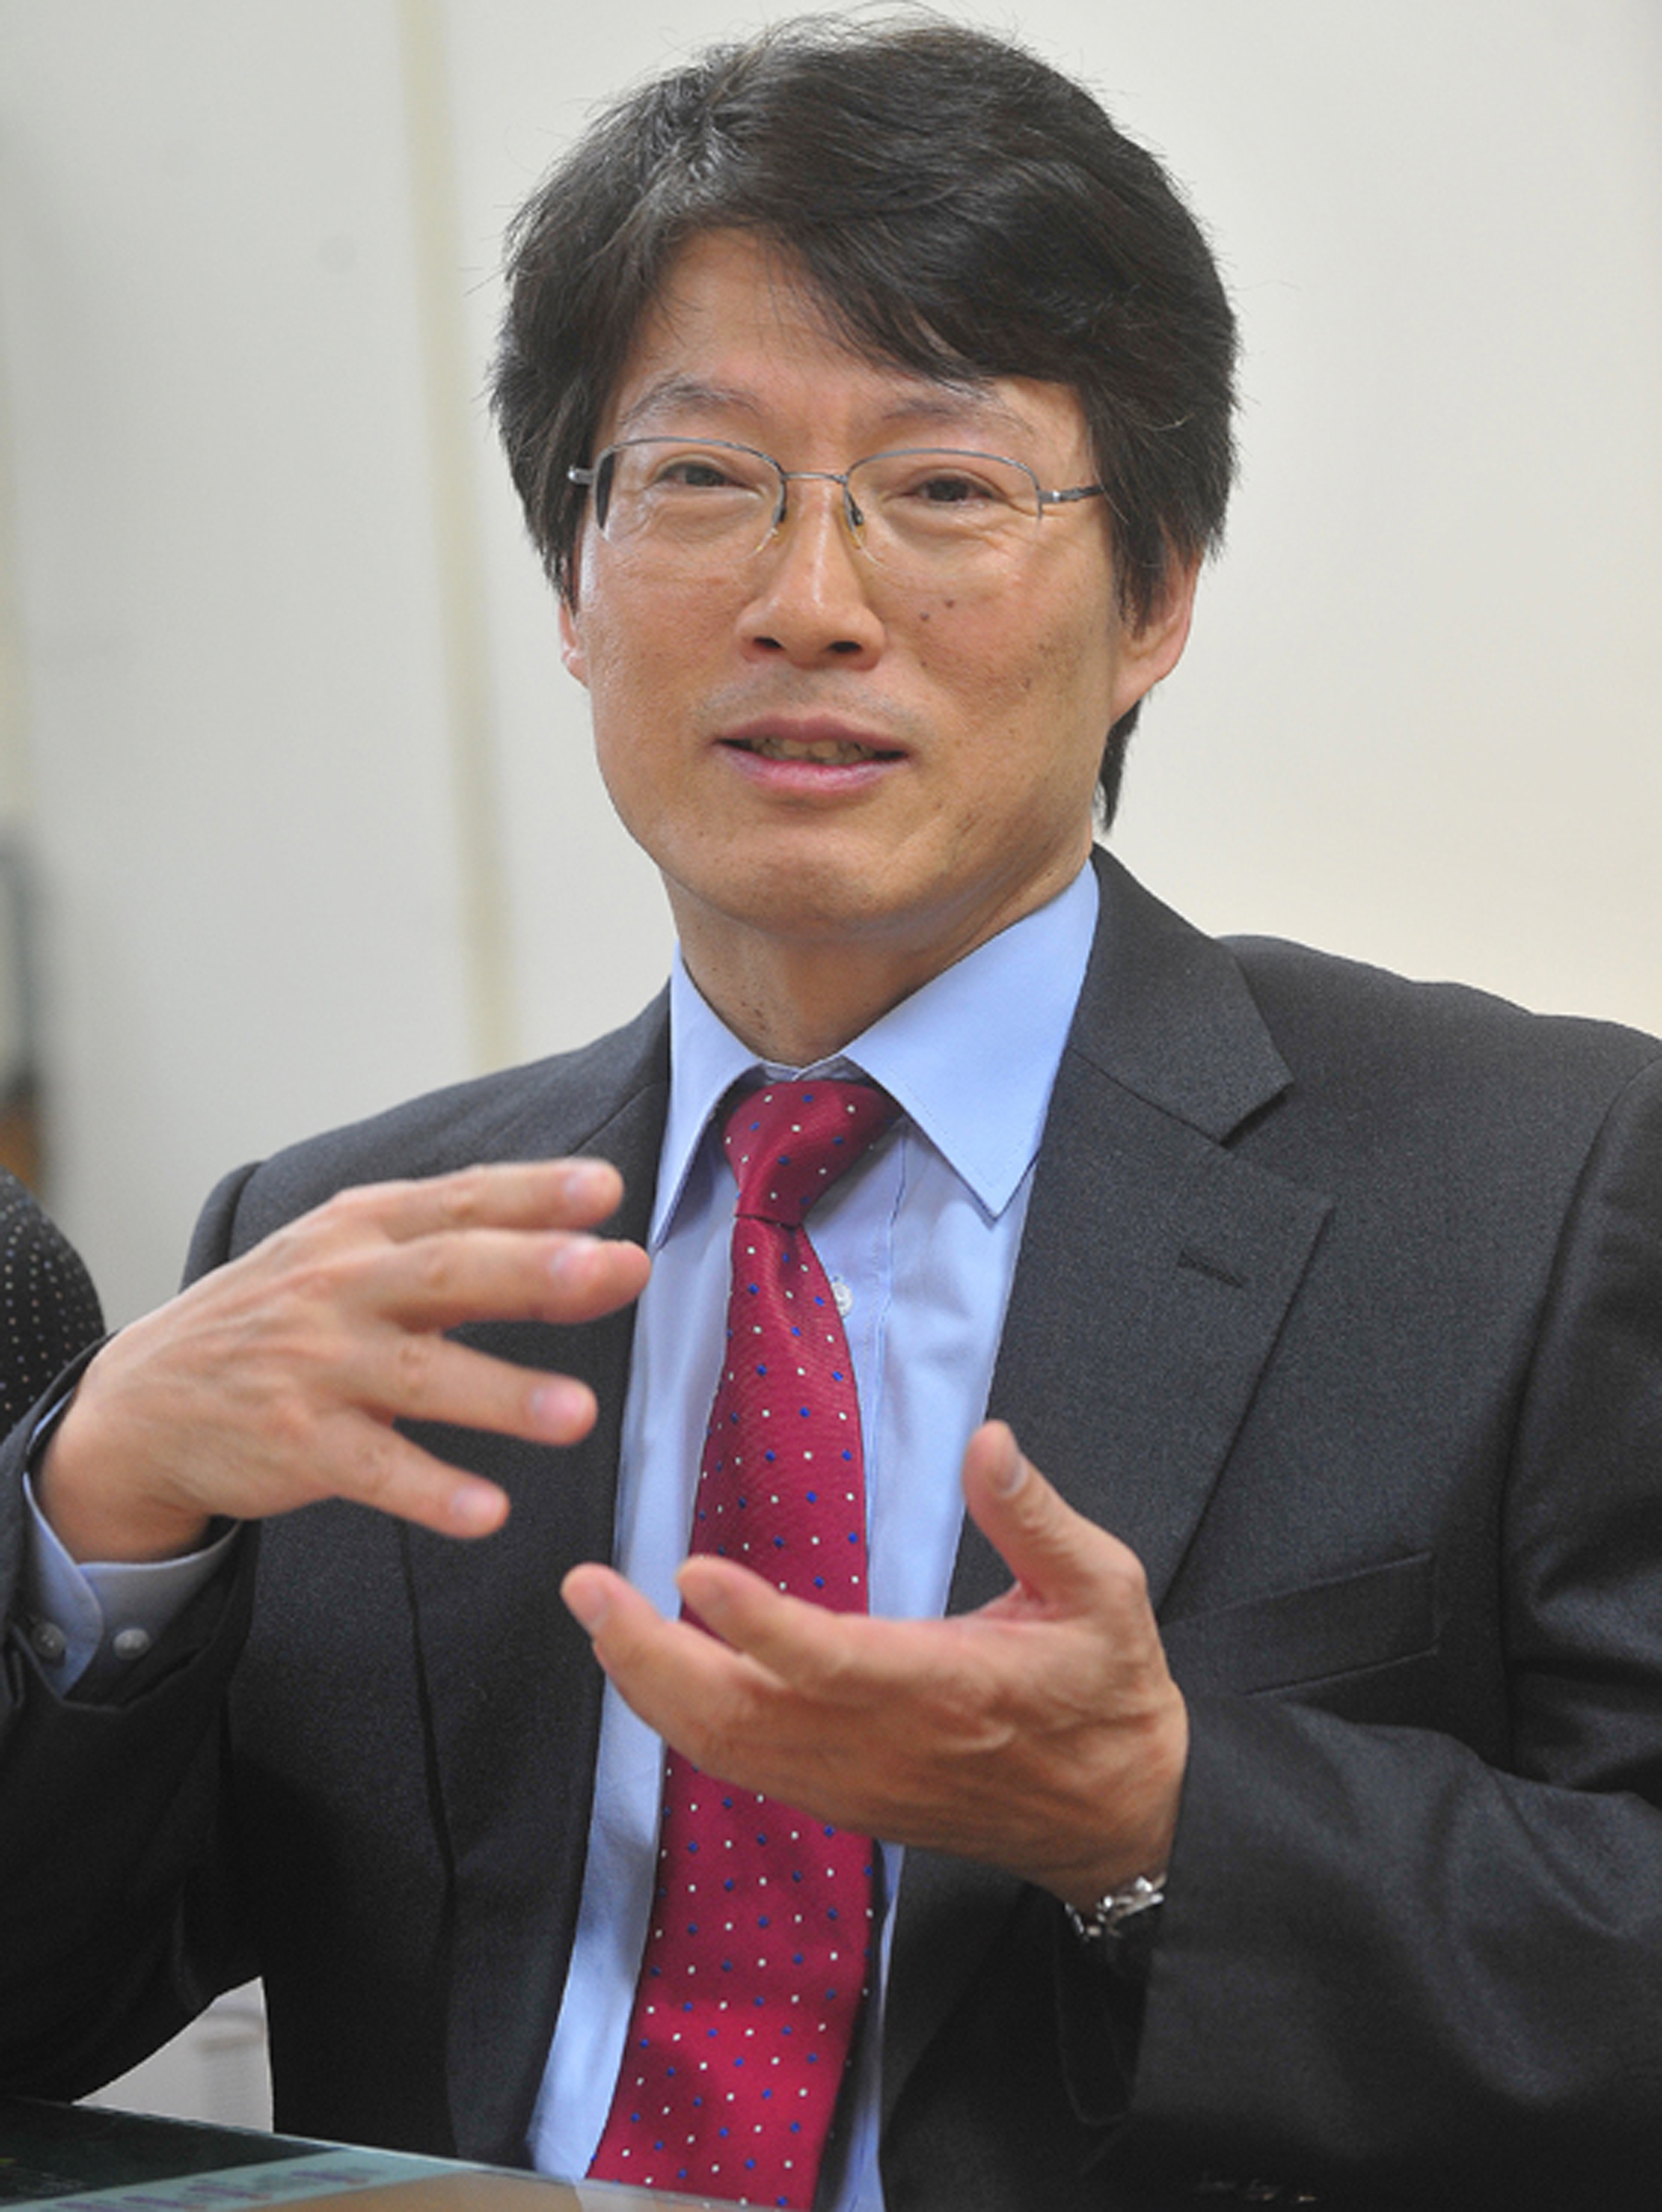 김성동 건국대학교 공과대학 유기나노시스템공학과 교수가 한국섬유공학회 제33대 신임 회장으로 선출됐다. 임기는 2016년도 1월부터 1년이다.